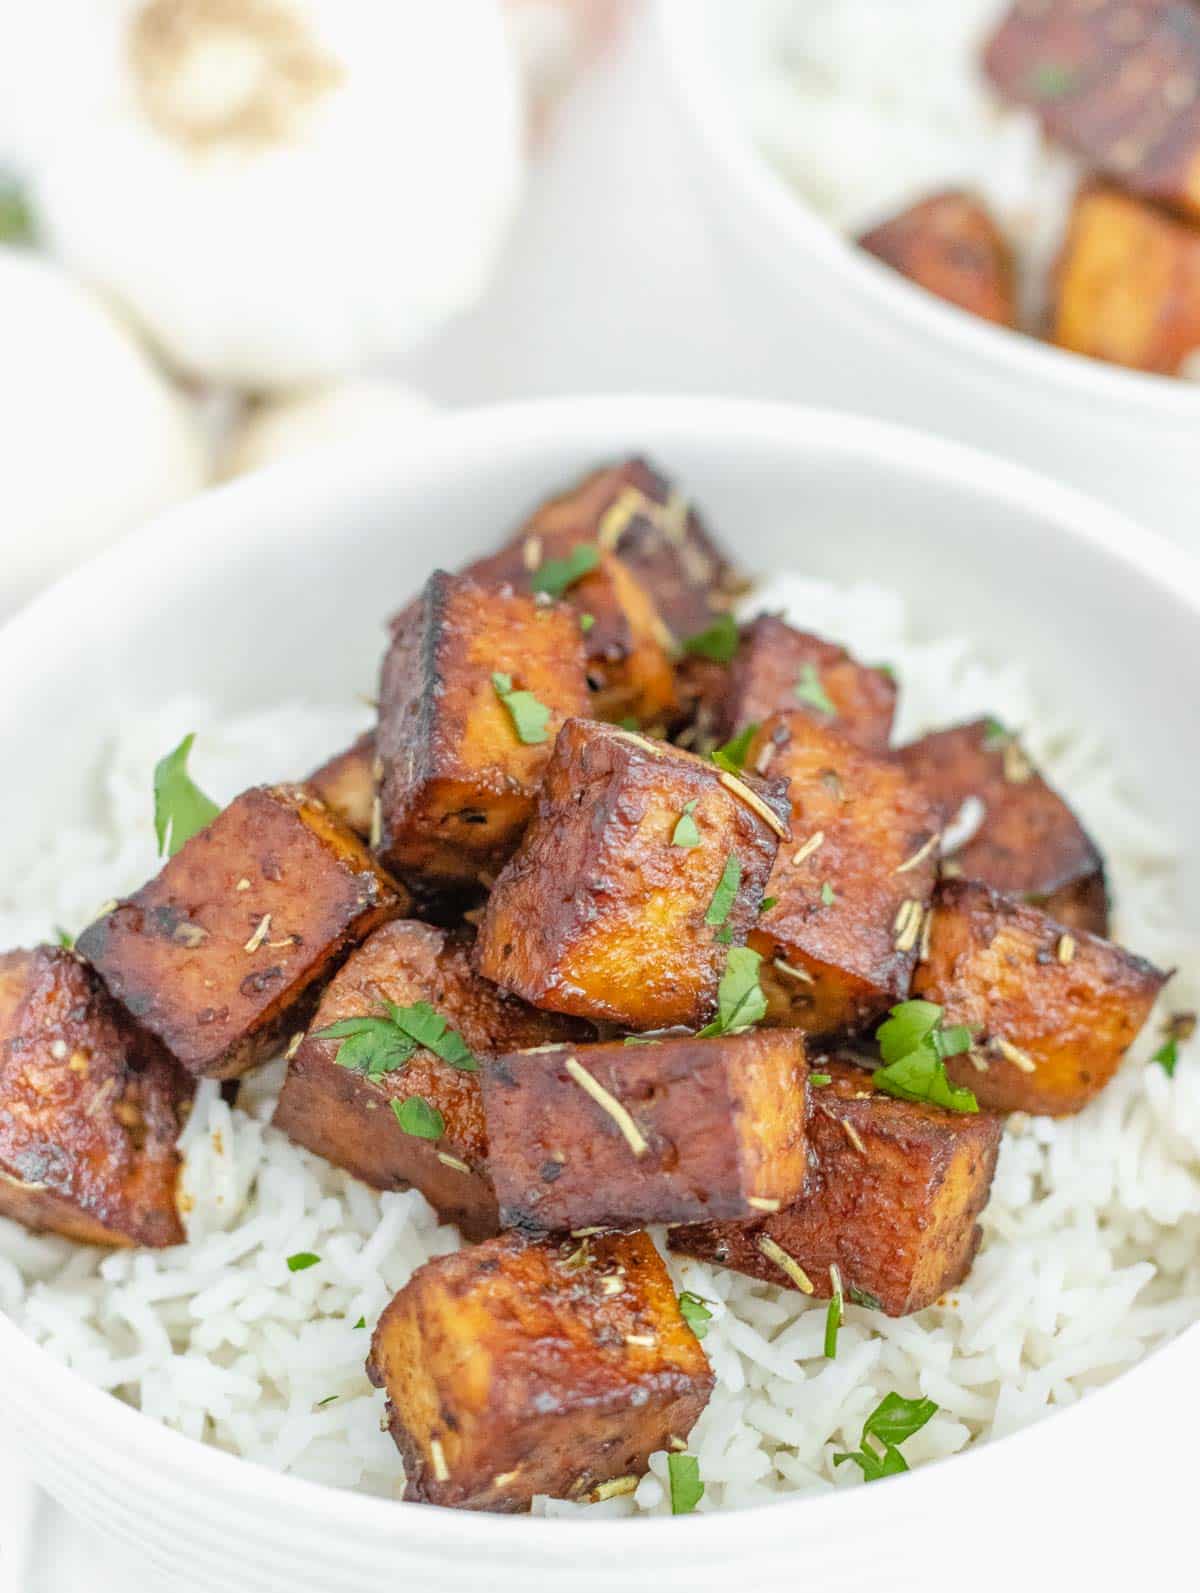 marinated tofu on rice